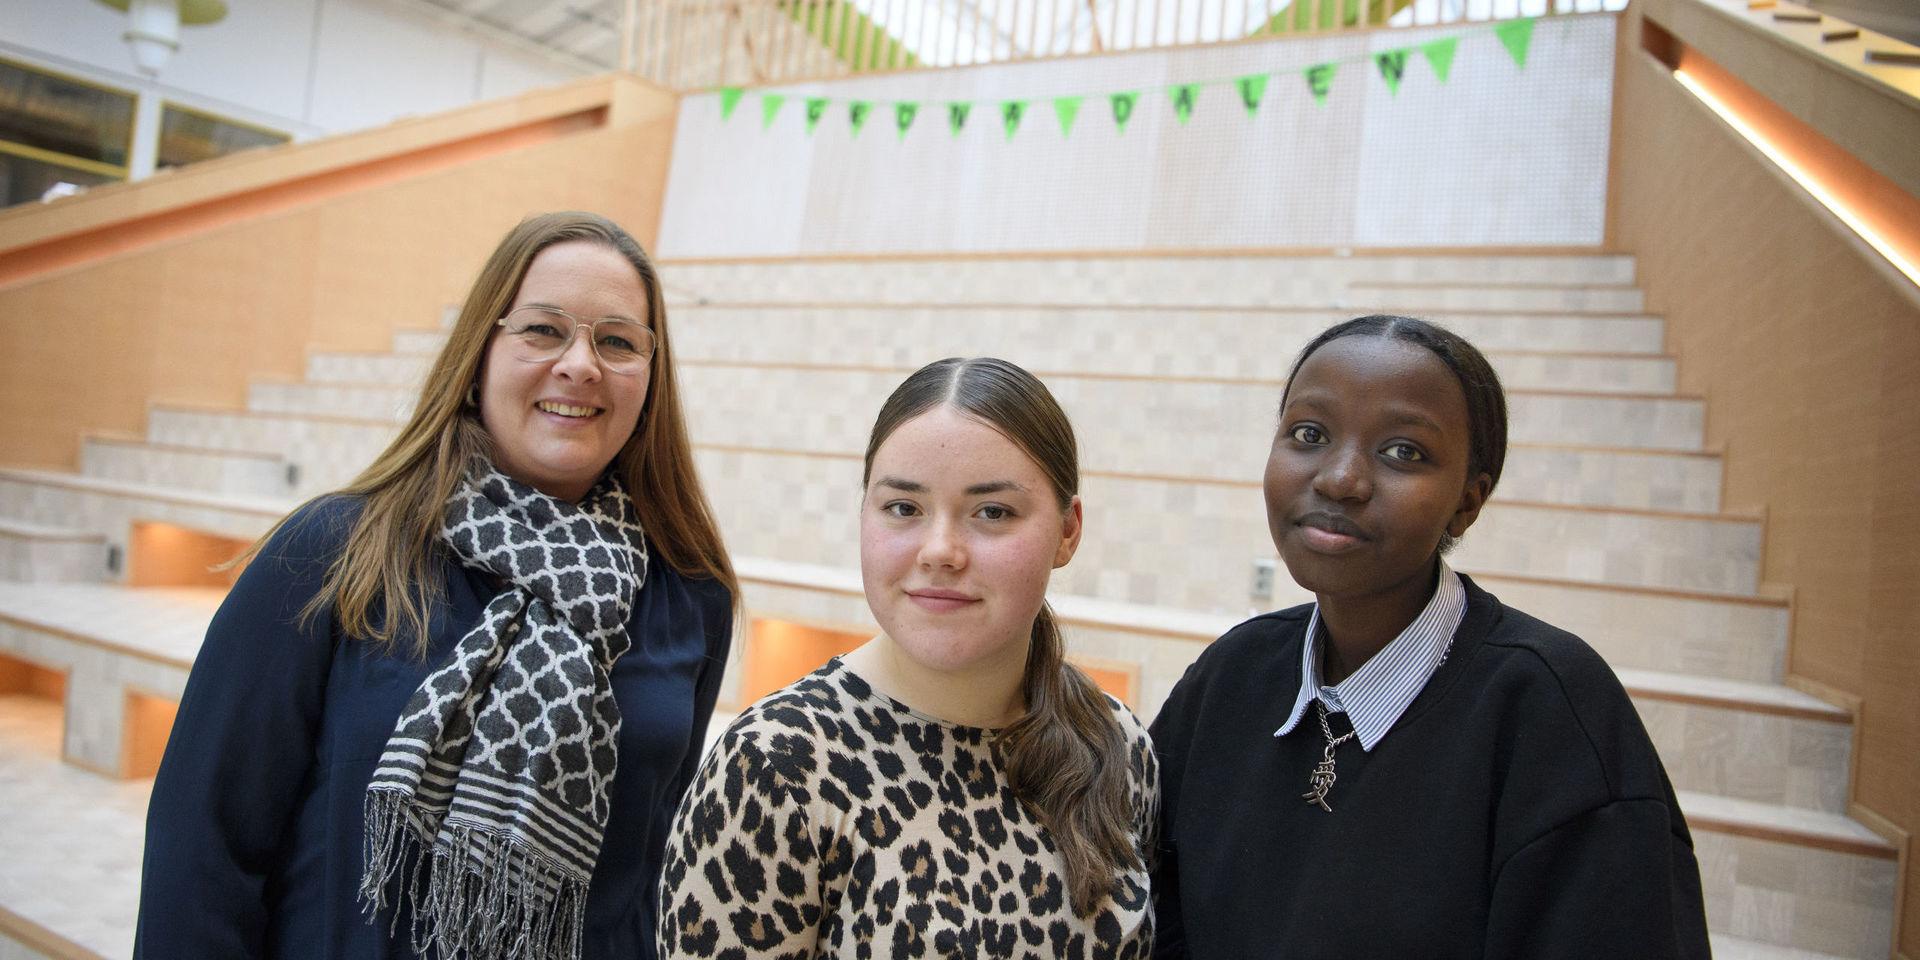 Läraren Annika Sjödahl med eleverna Maria Koroleva och Nyamuhoza Nyahumure på Gröna Dalenskolan i Bålsta. 'Jag försöker skapa min undervisning utifrån vad eleverna själva tycker är intressant', säger Annika Sjödahl.